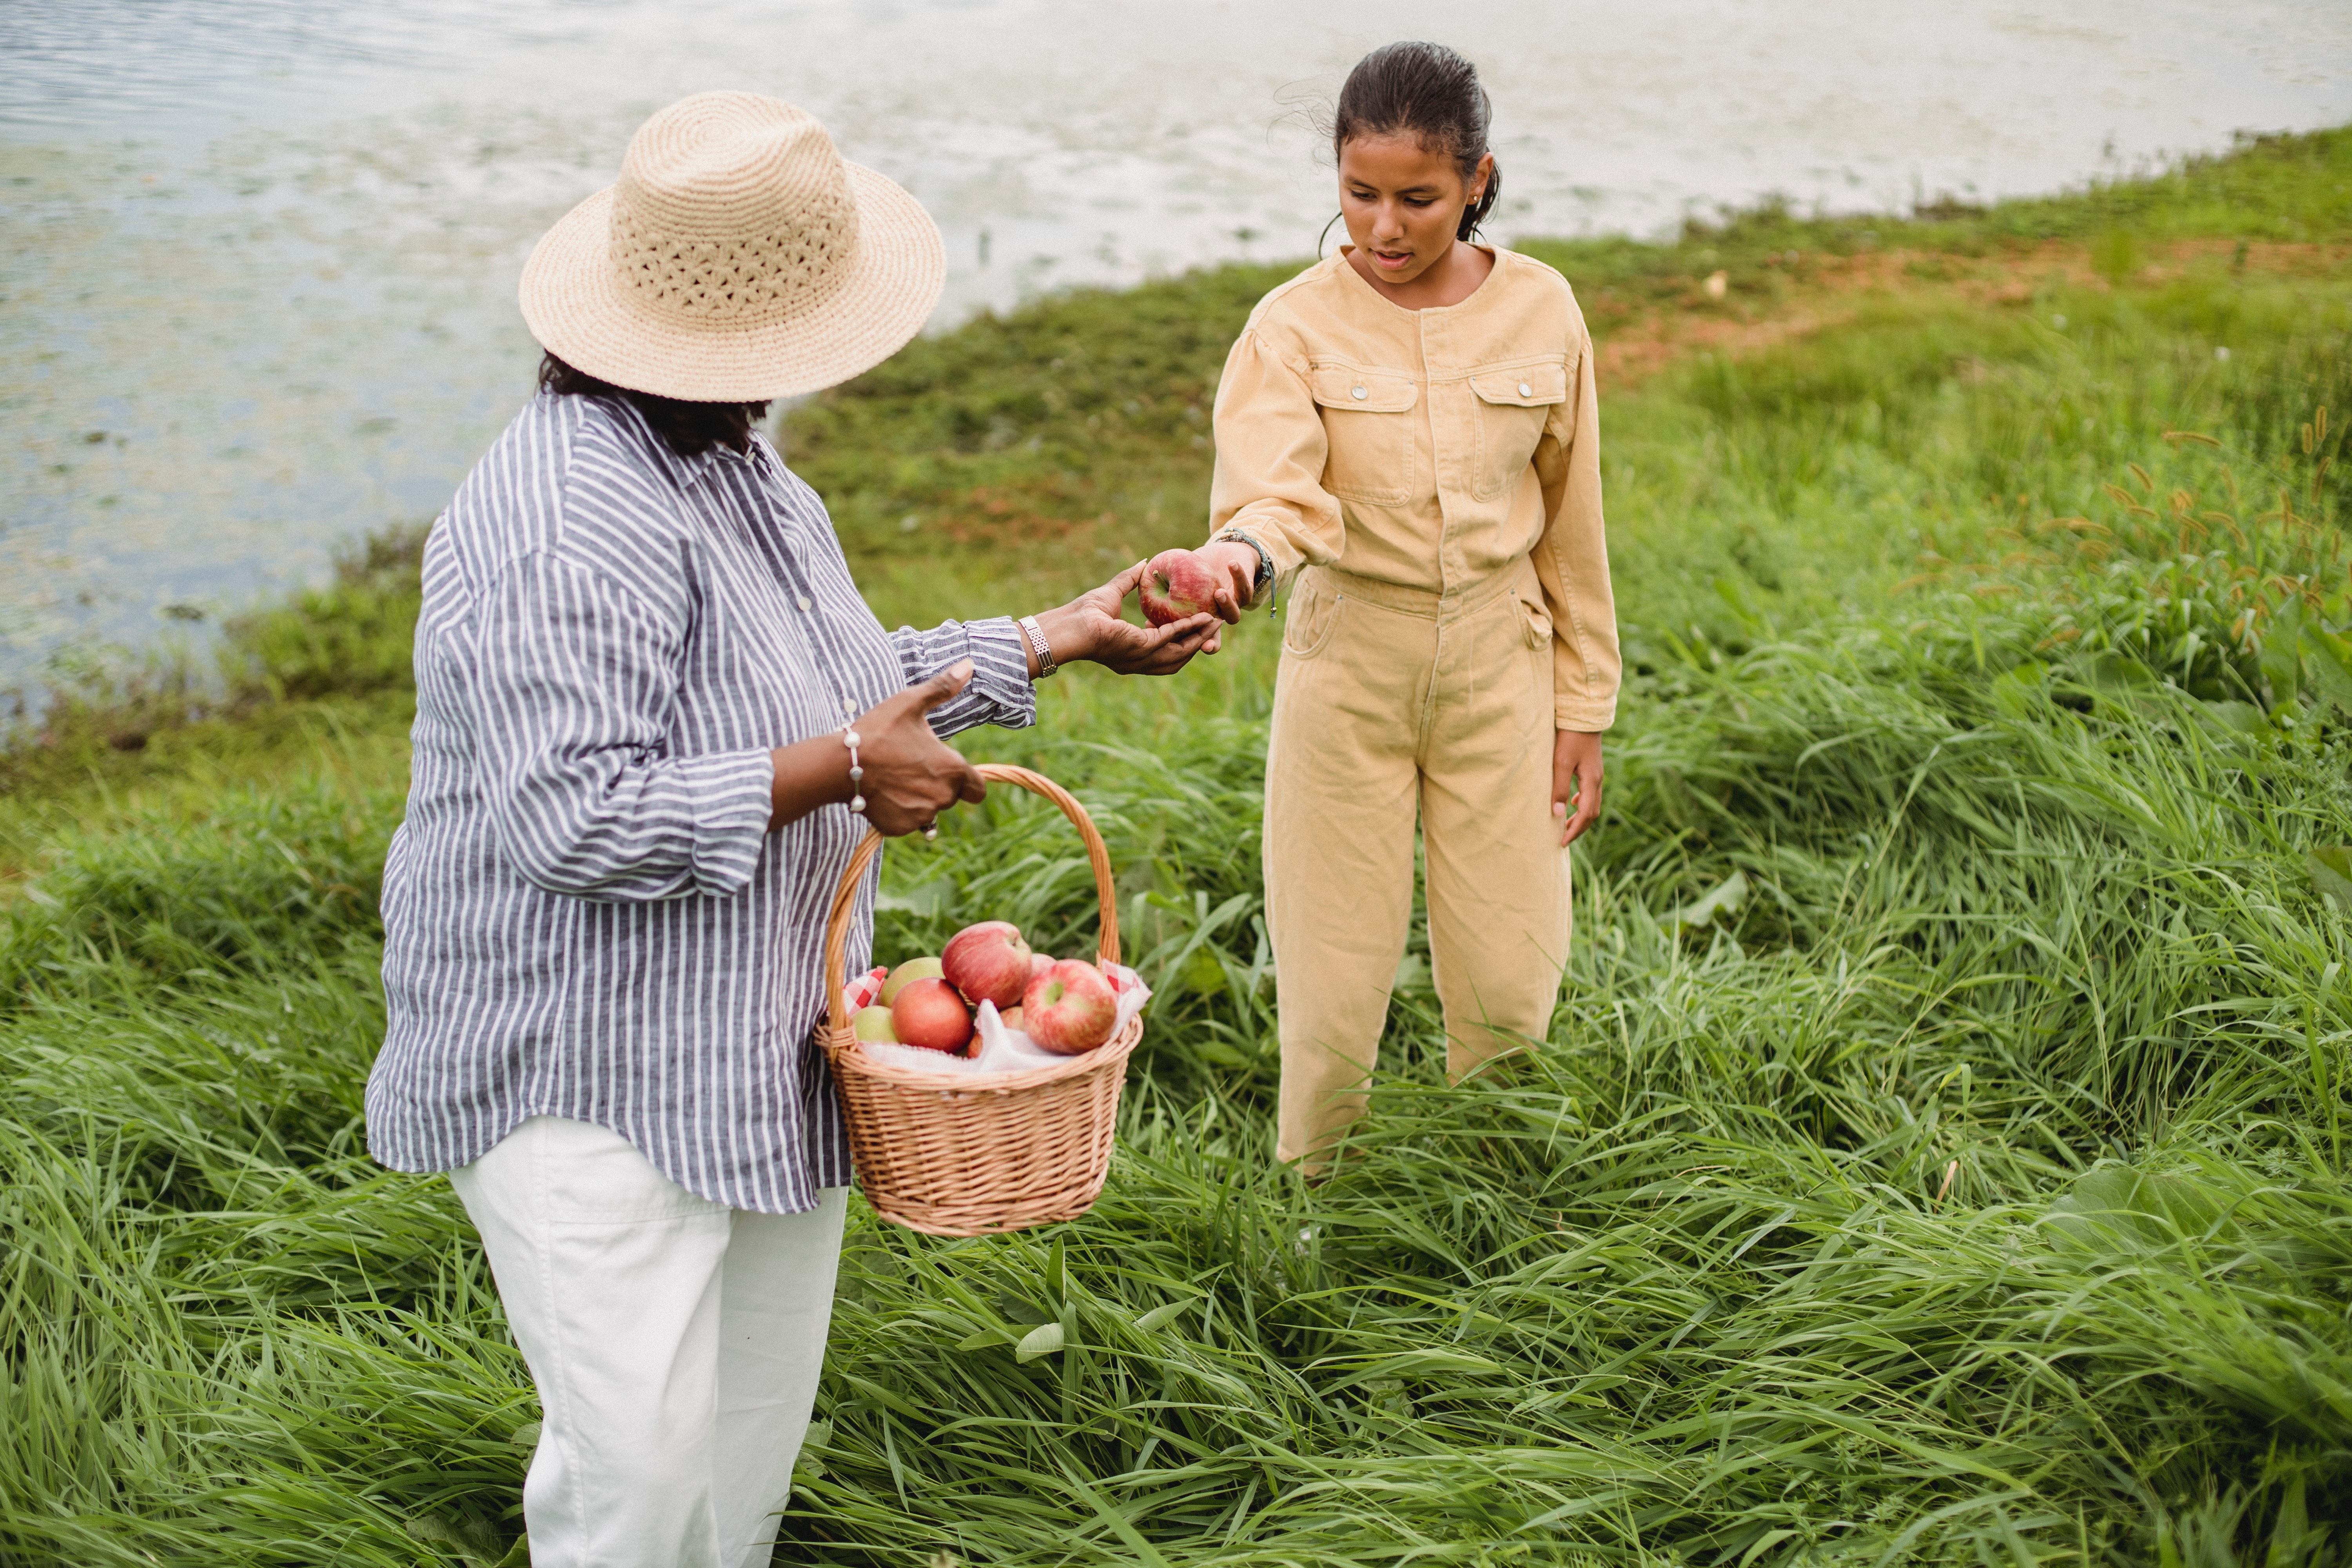 older woman handing younger woman an apple an a field 